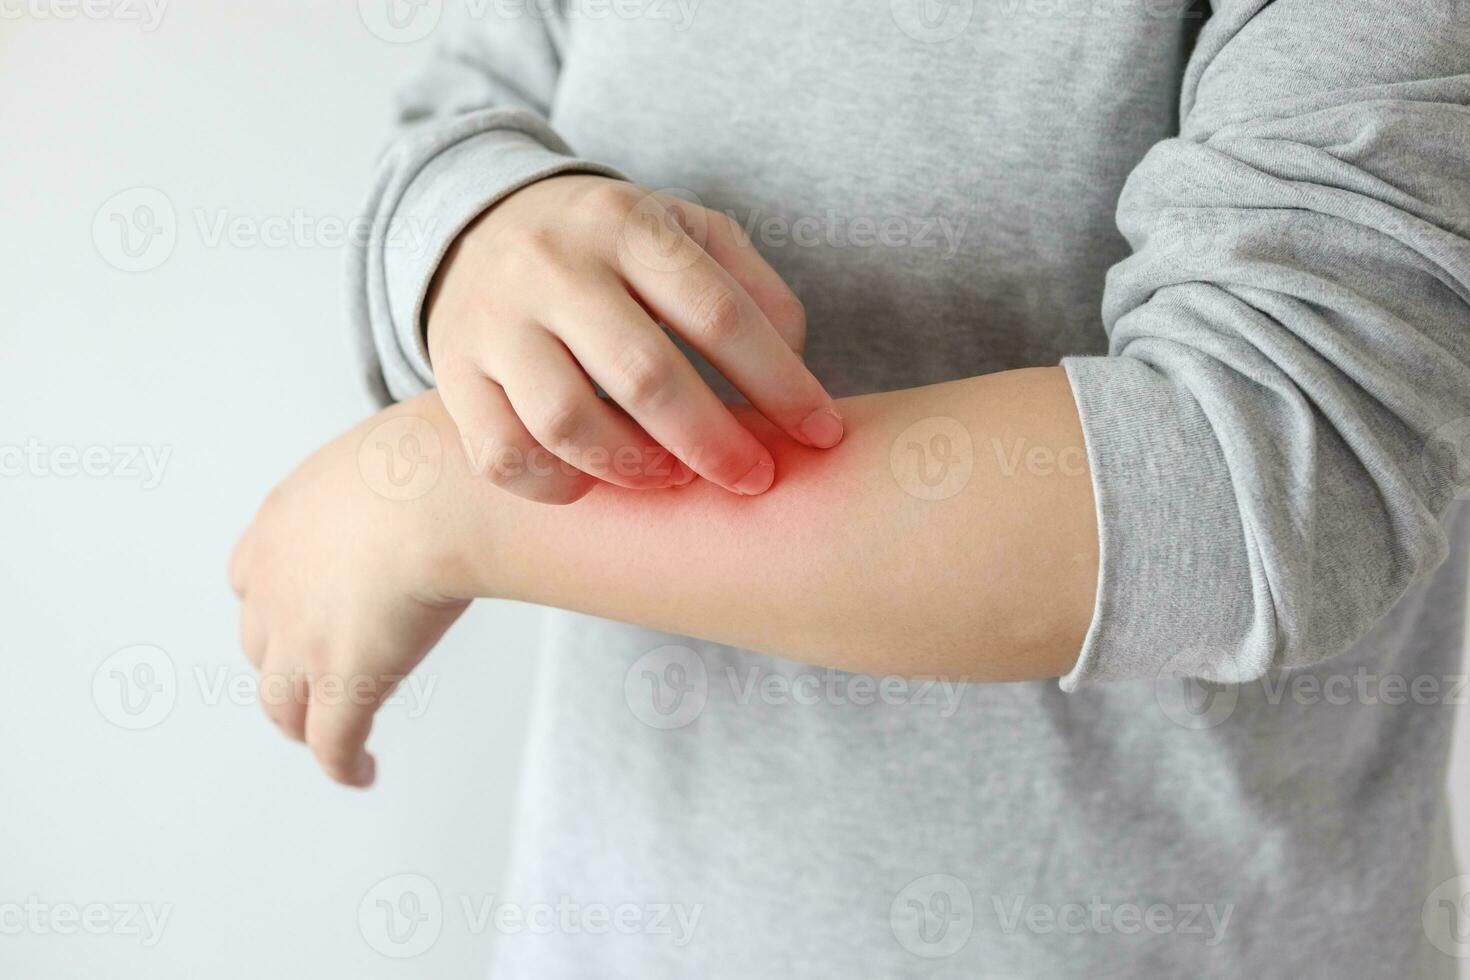 jeune femme asiatique qui démange et se gratte le bras à cause de la dermatite eczéma de la peau sèche qui démange photo